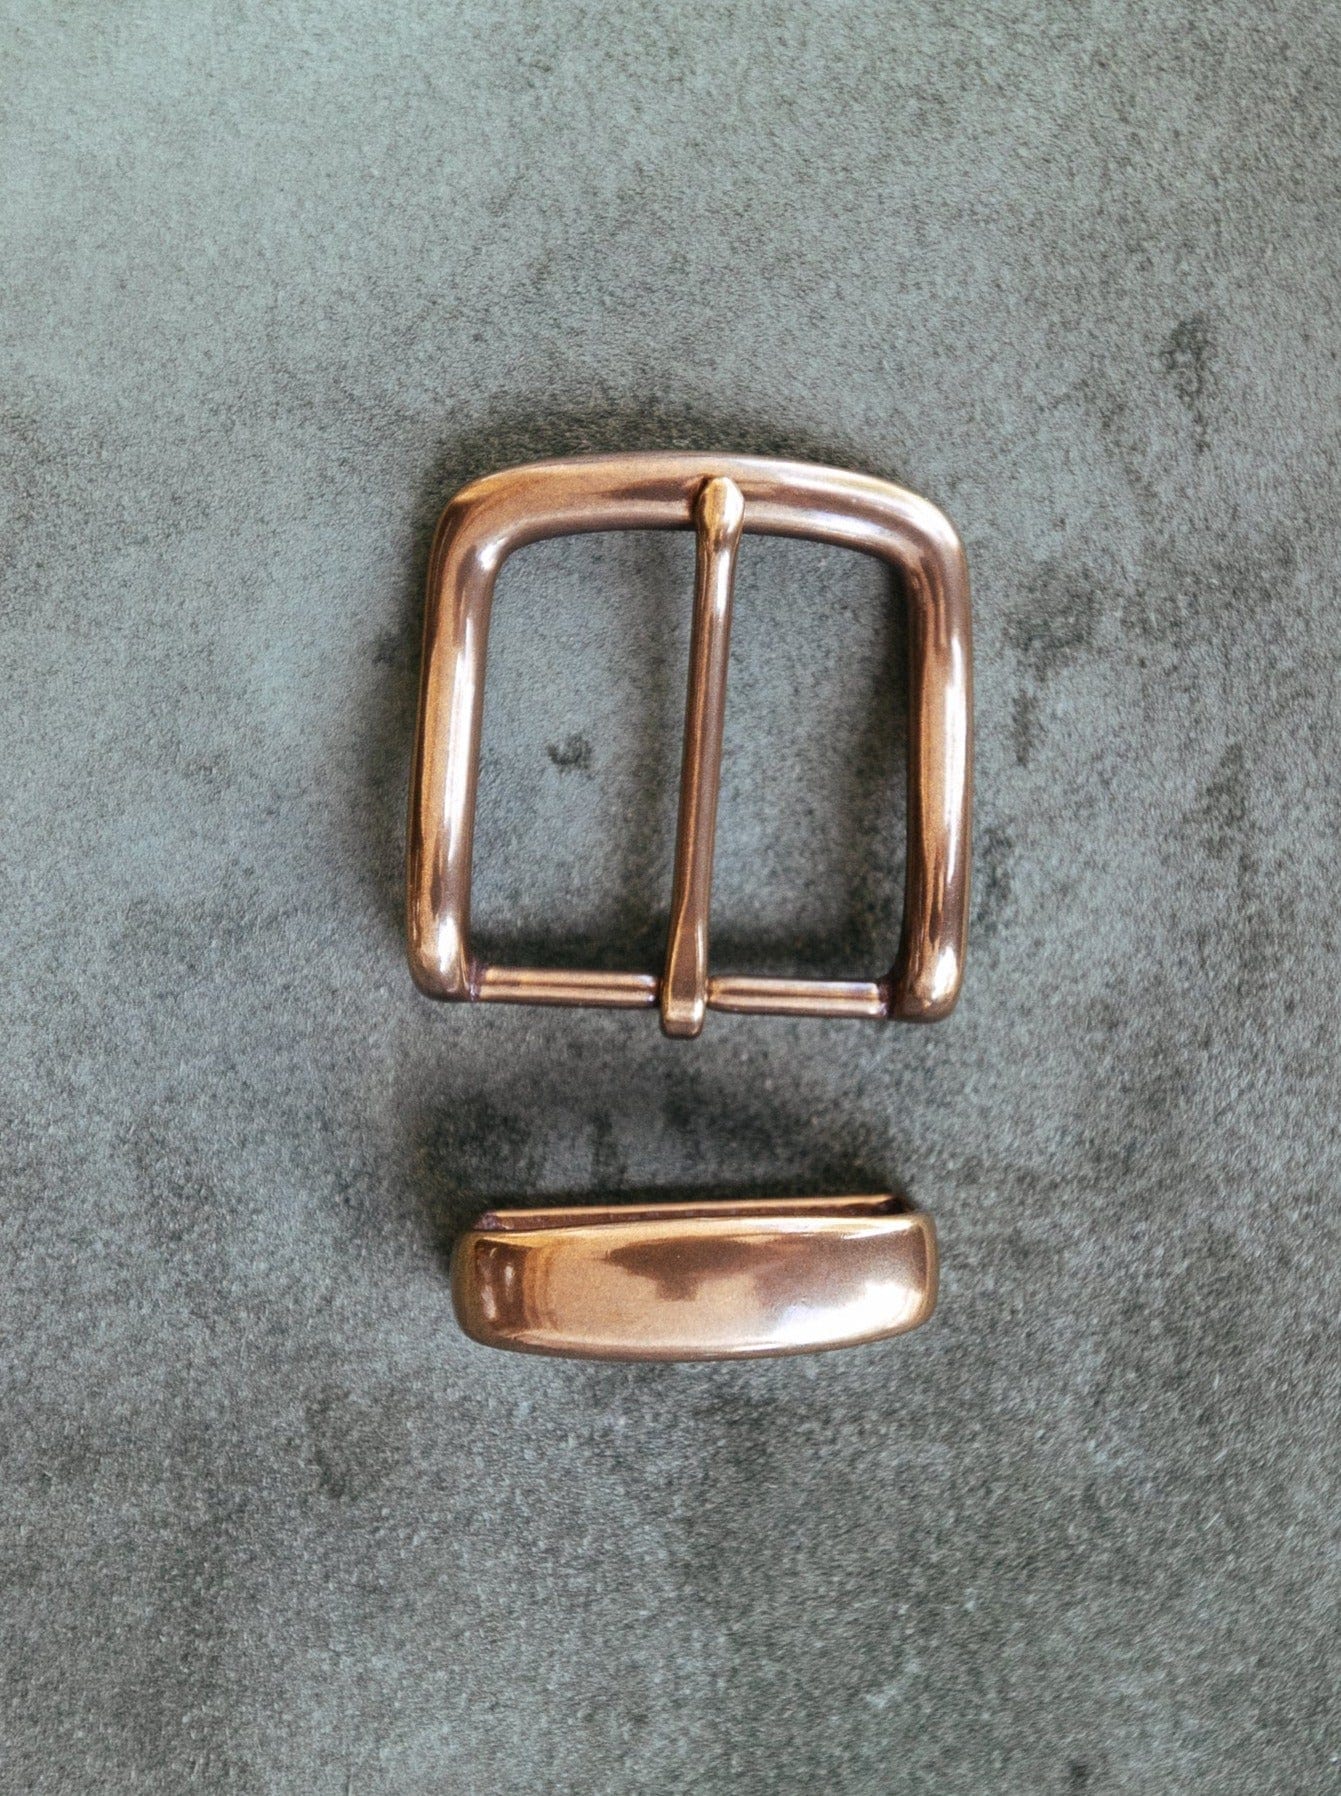 Stunning Vintage Brass Belt Buckle